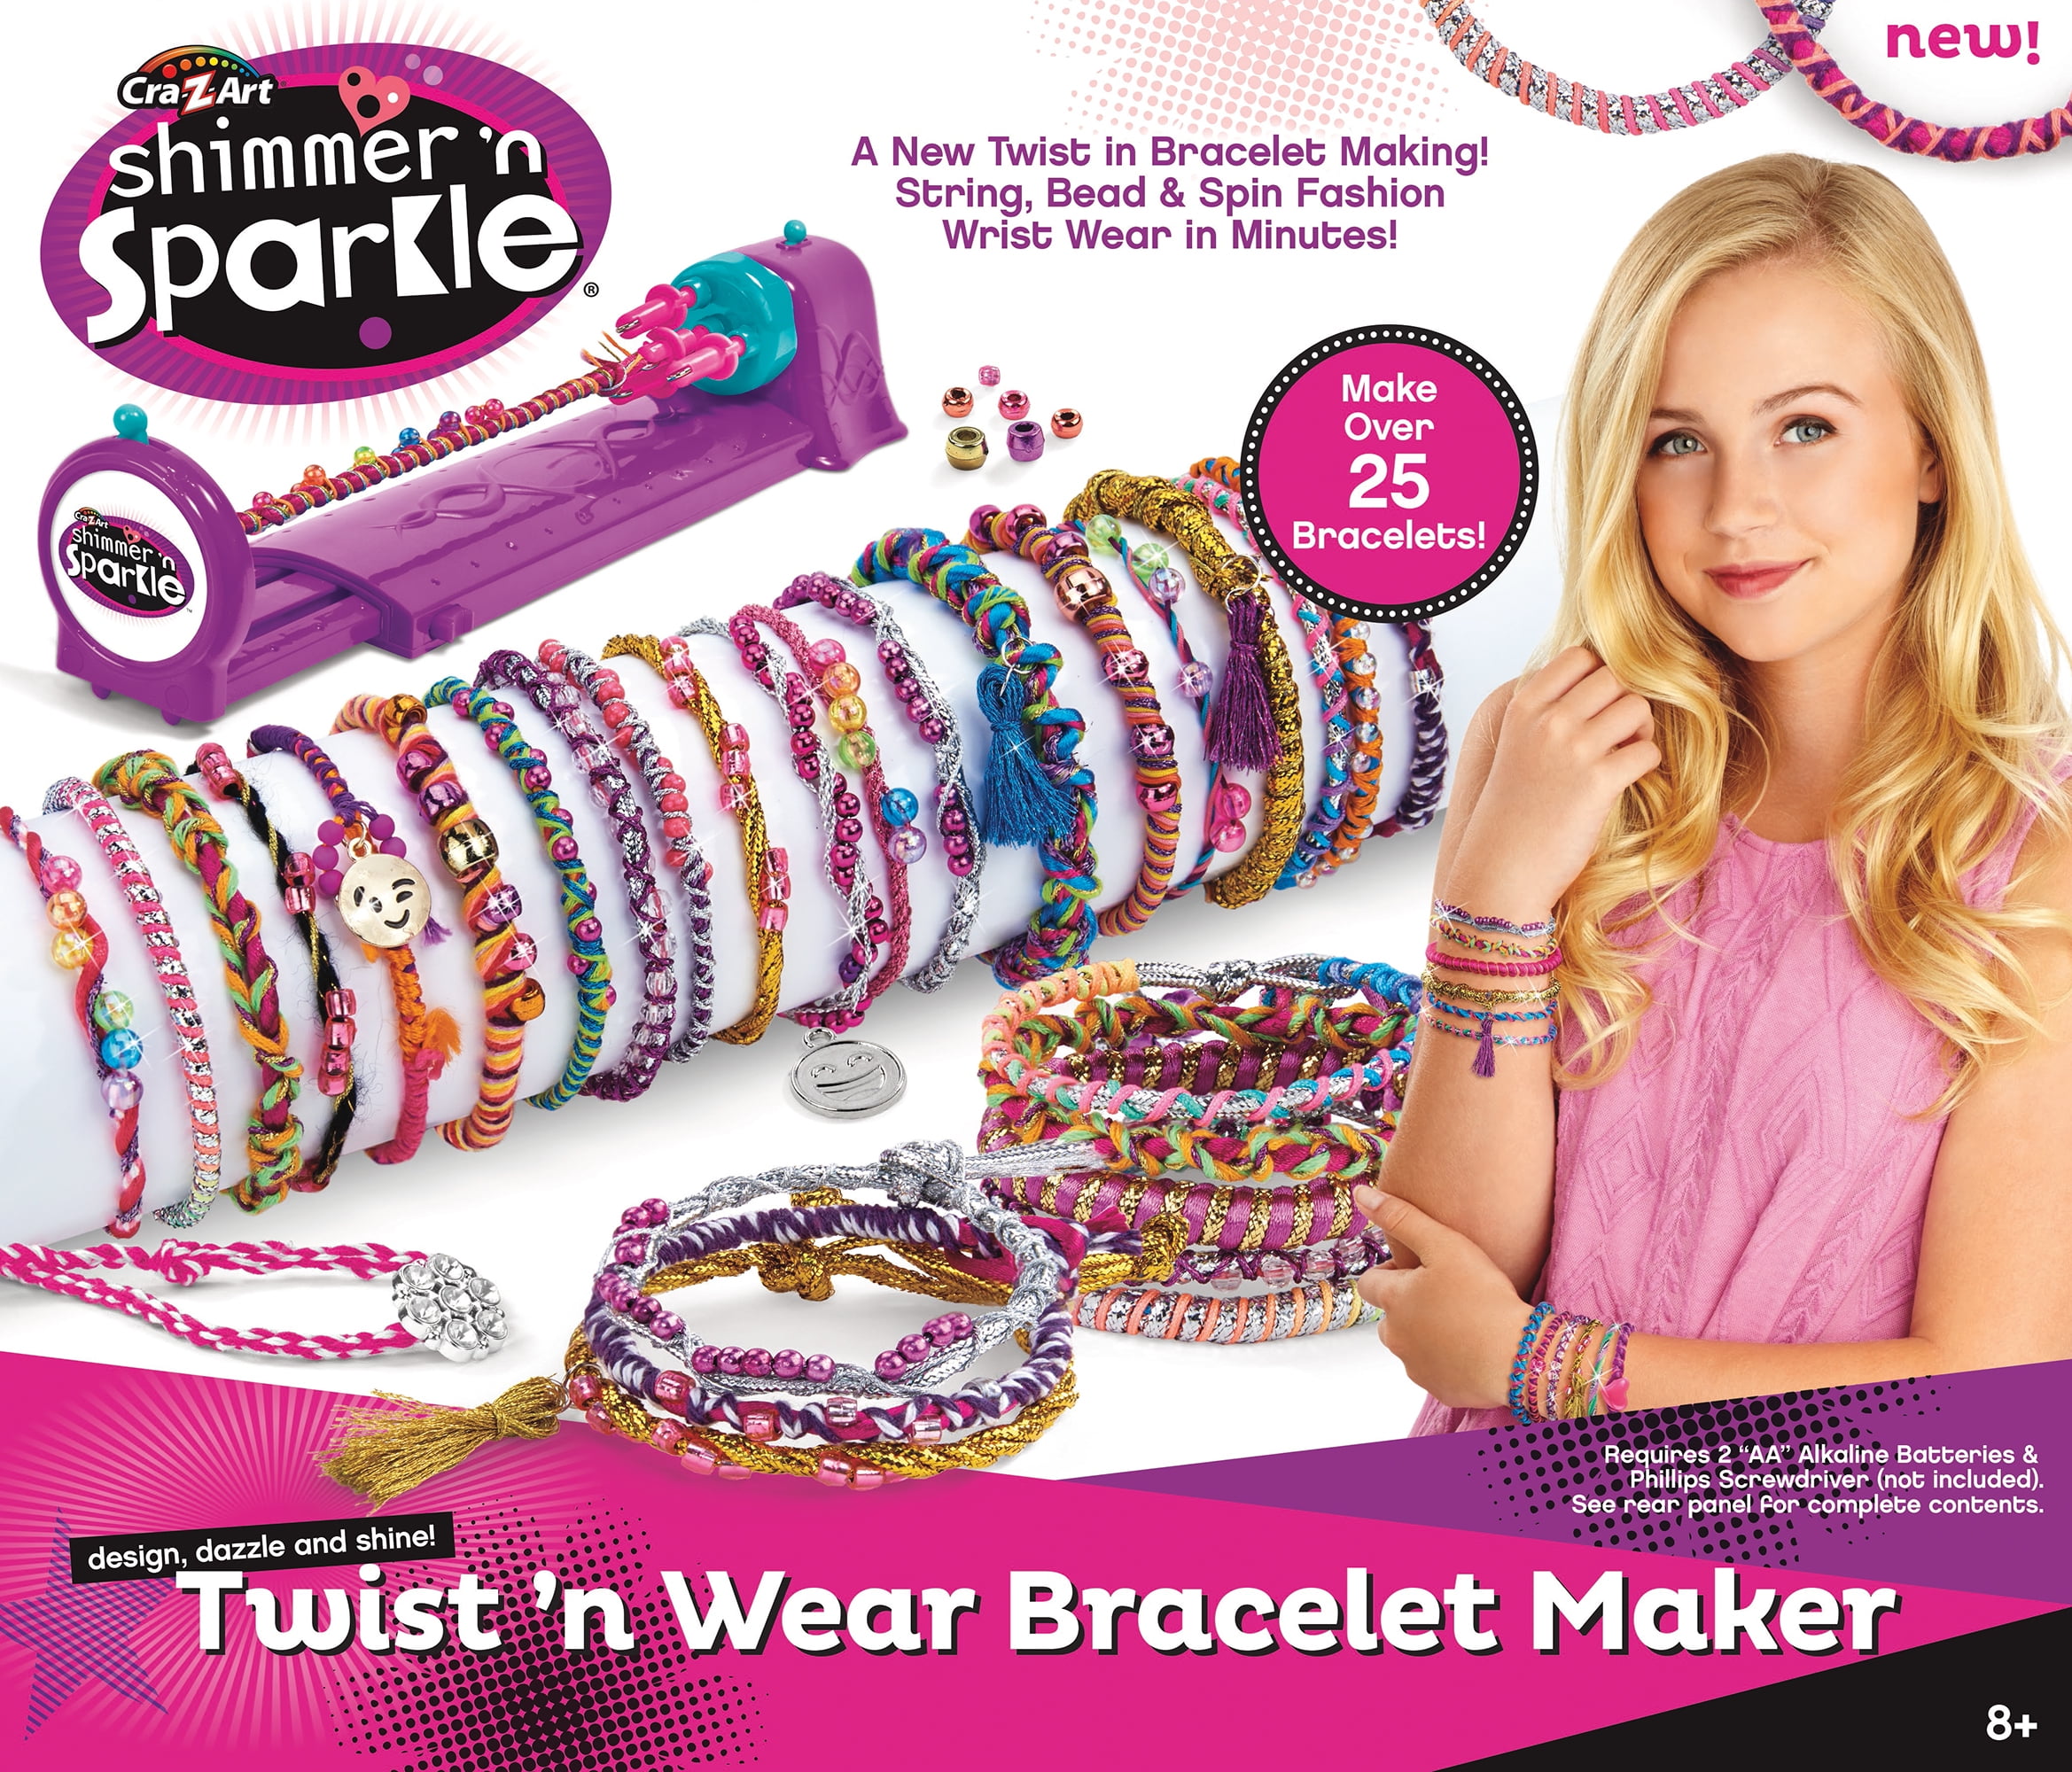 CRA-Z-Art Shimmer ‘N Sparkle 2-in-1 Spin & Bead Friendship Studio Bracelet  Maker